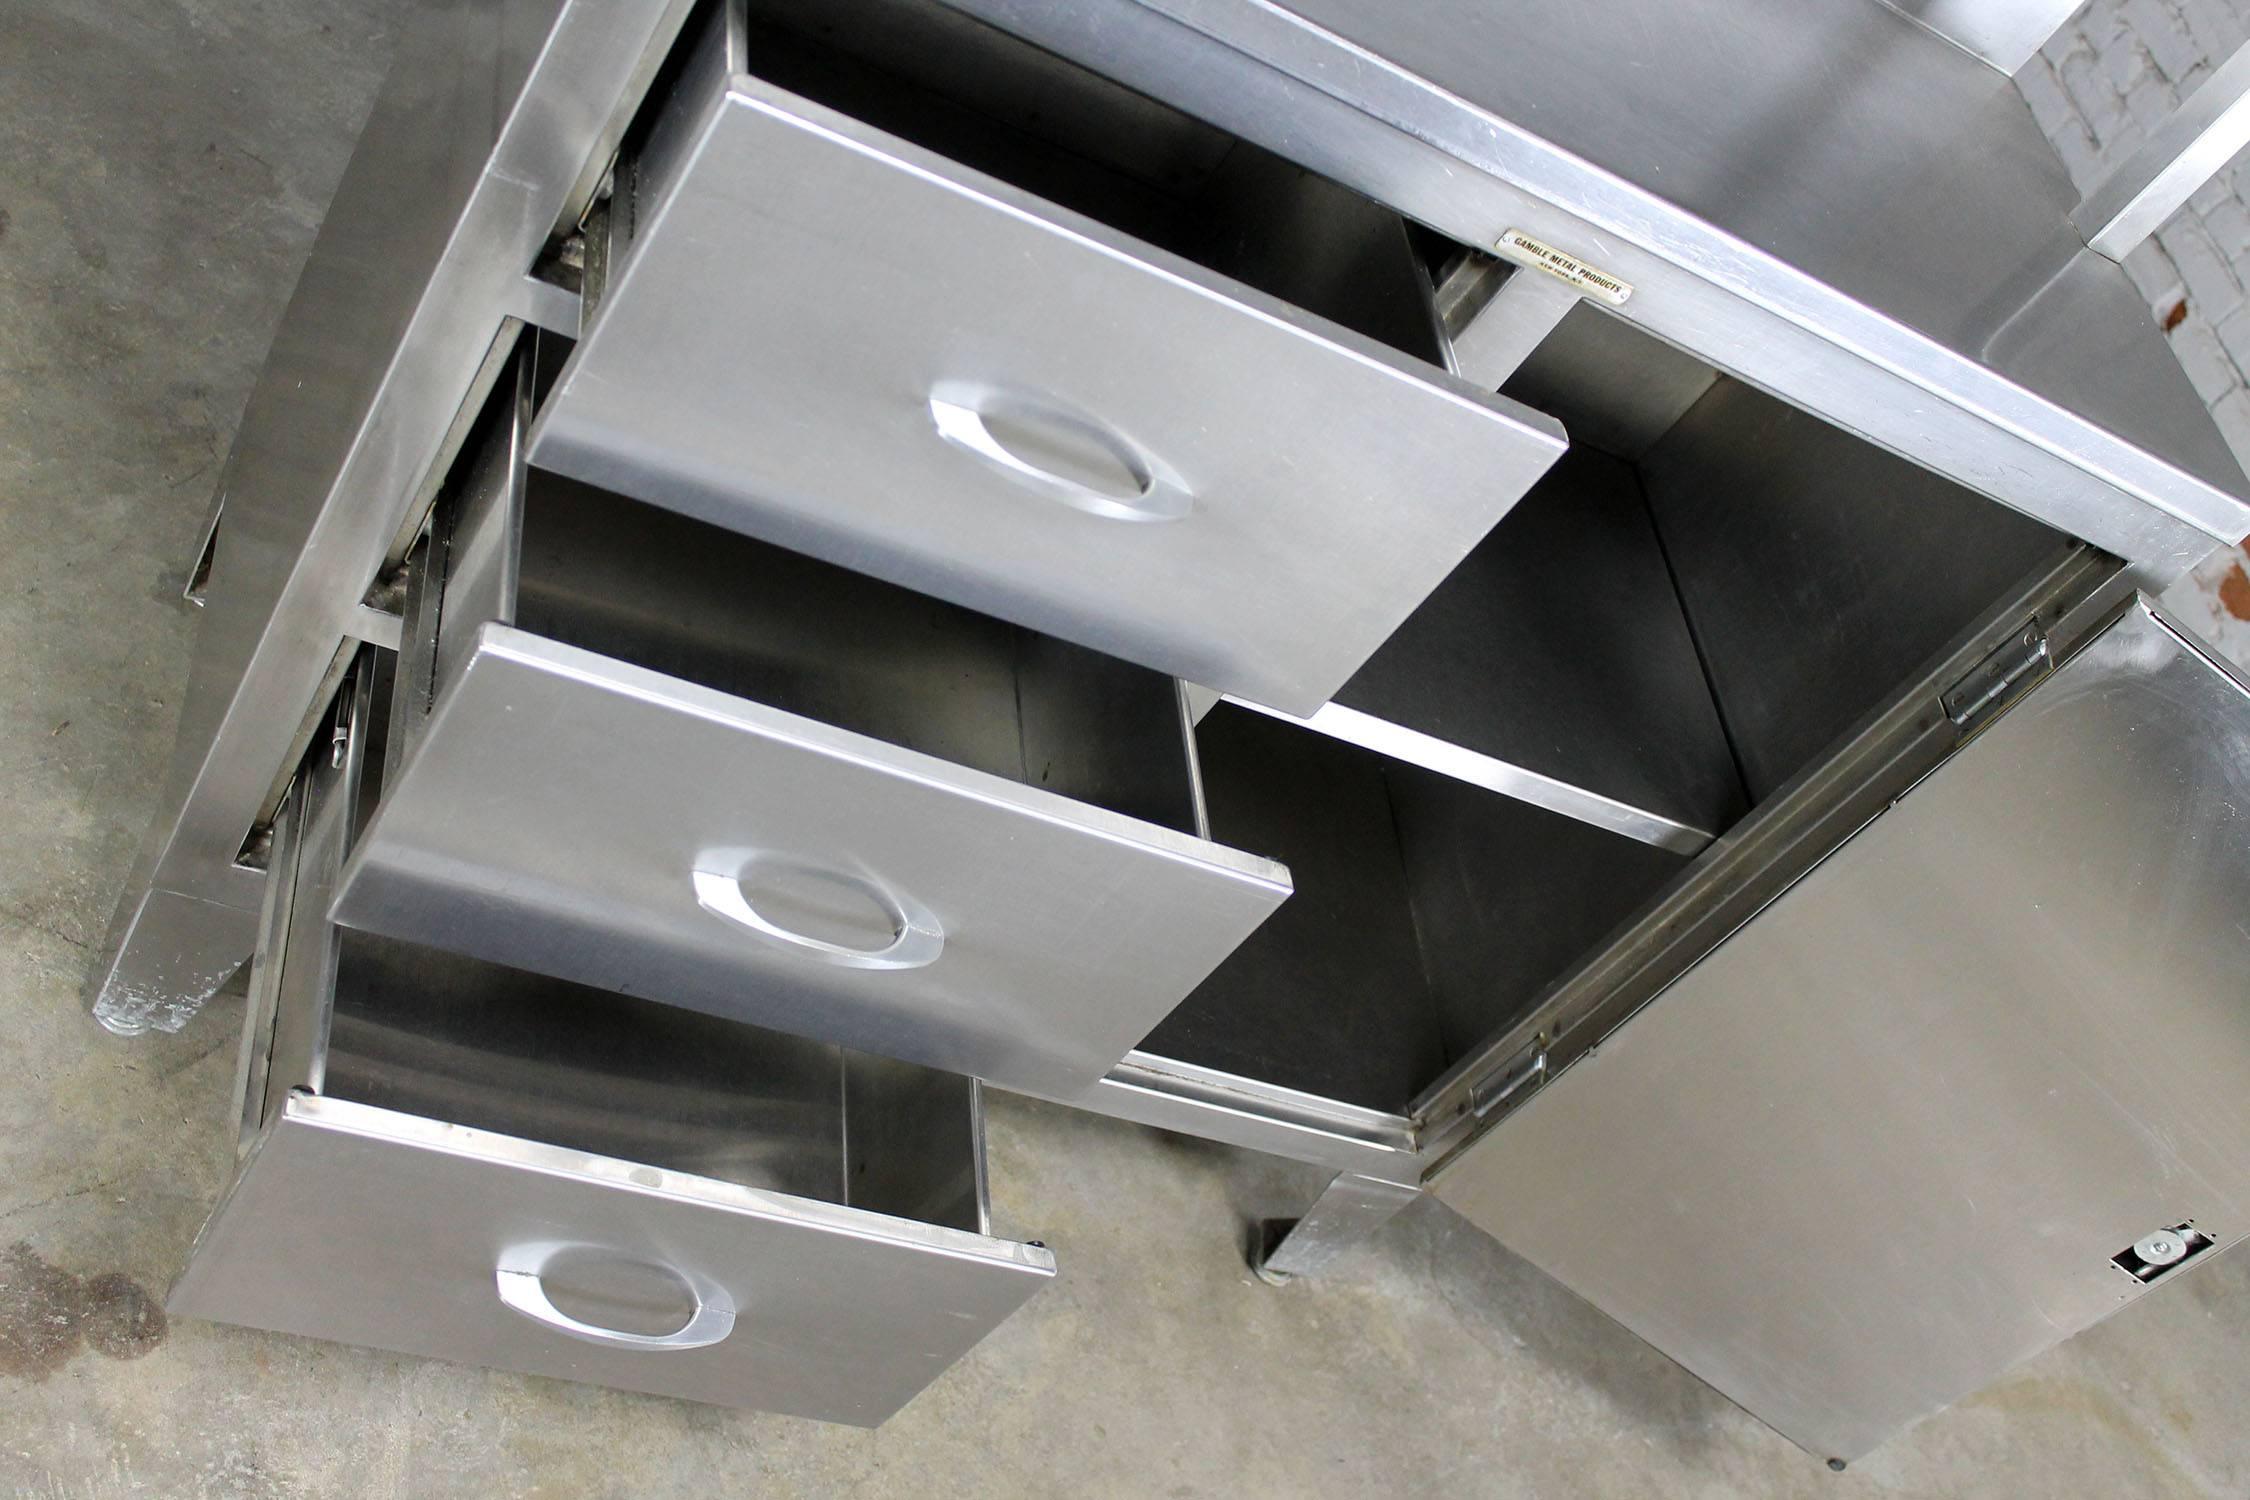 American Vintage Stainless Steel Cupboard Industrial Medical Step Back Cabinet